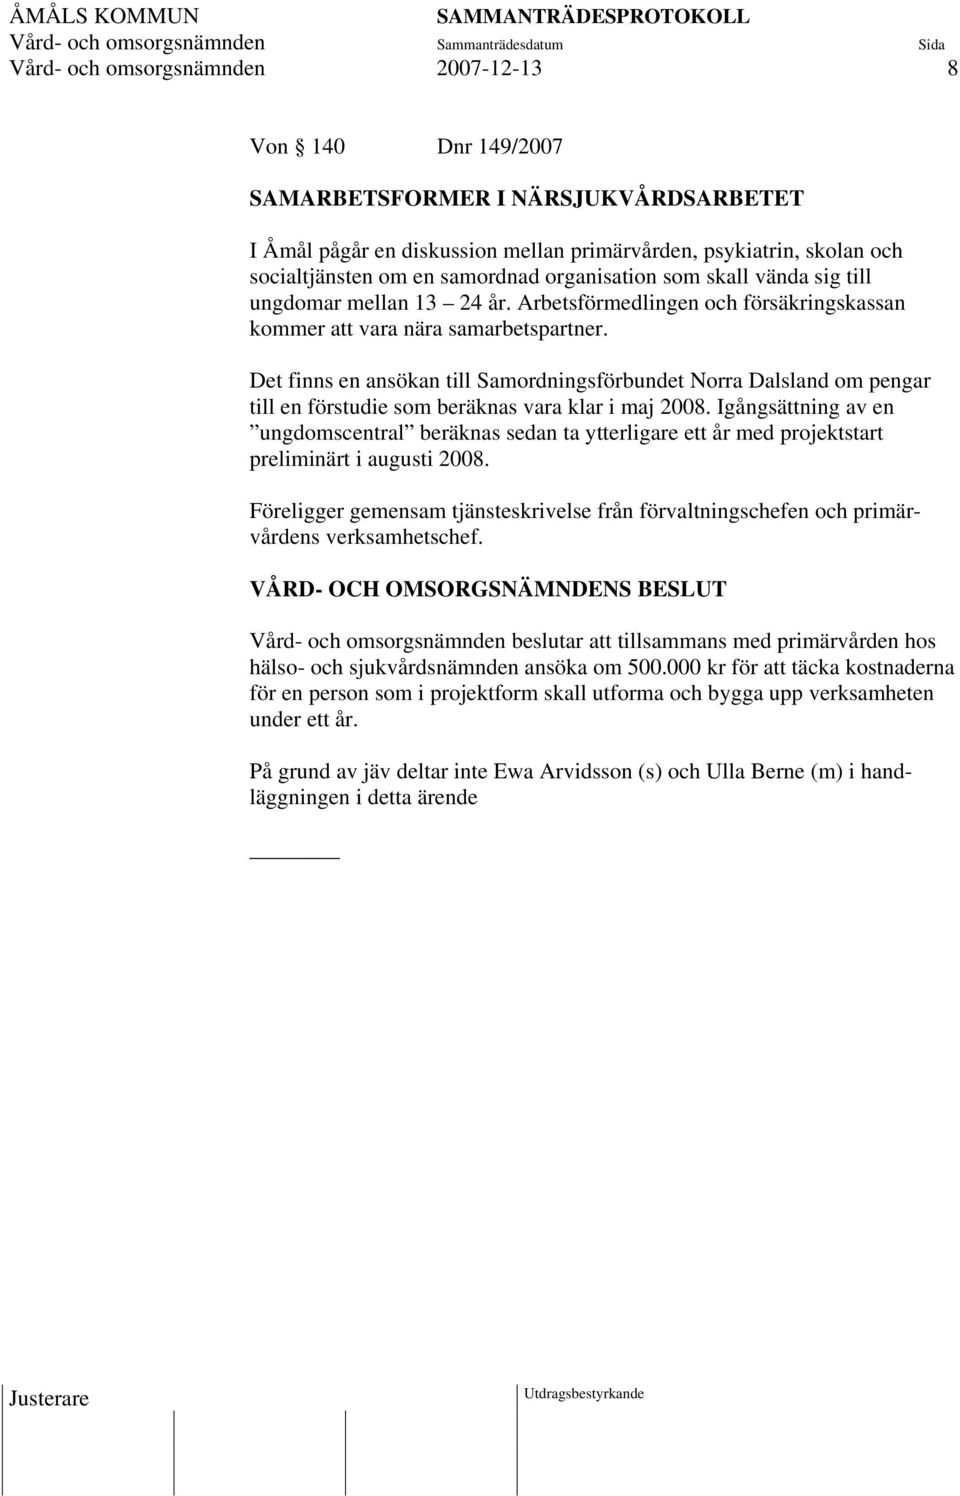 Det finns en ansökan till Samordningsförbundet Norra Dalsland om pengar till en förstudie som beräknas vara klar i maj 2008.